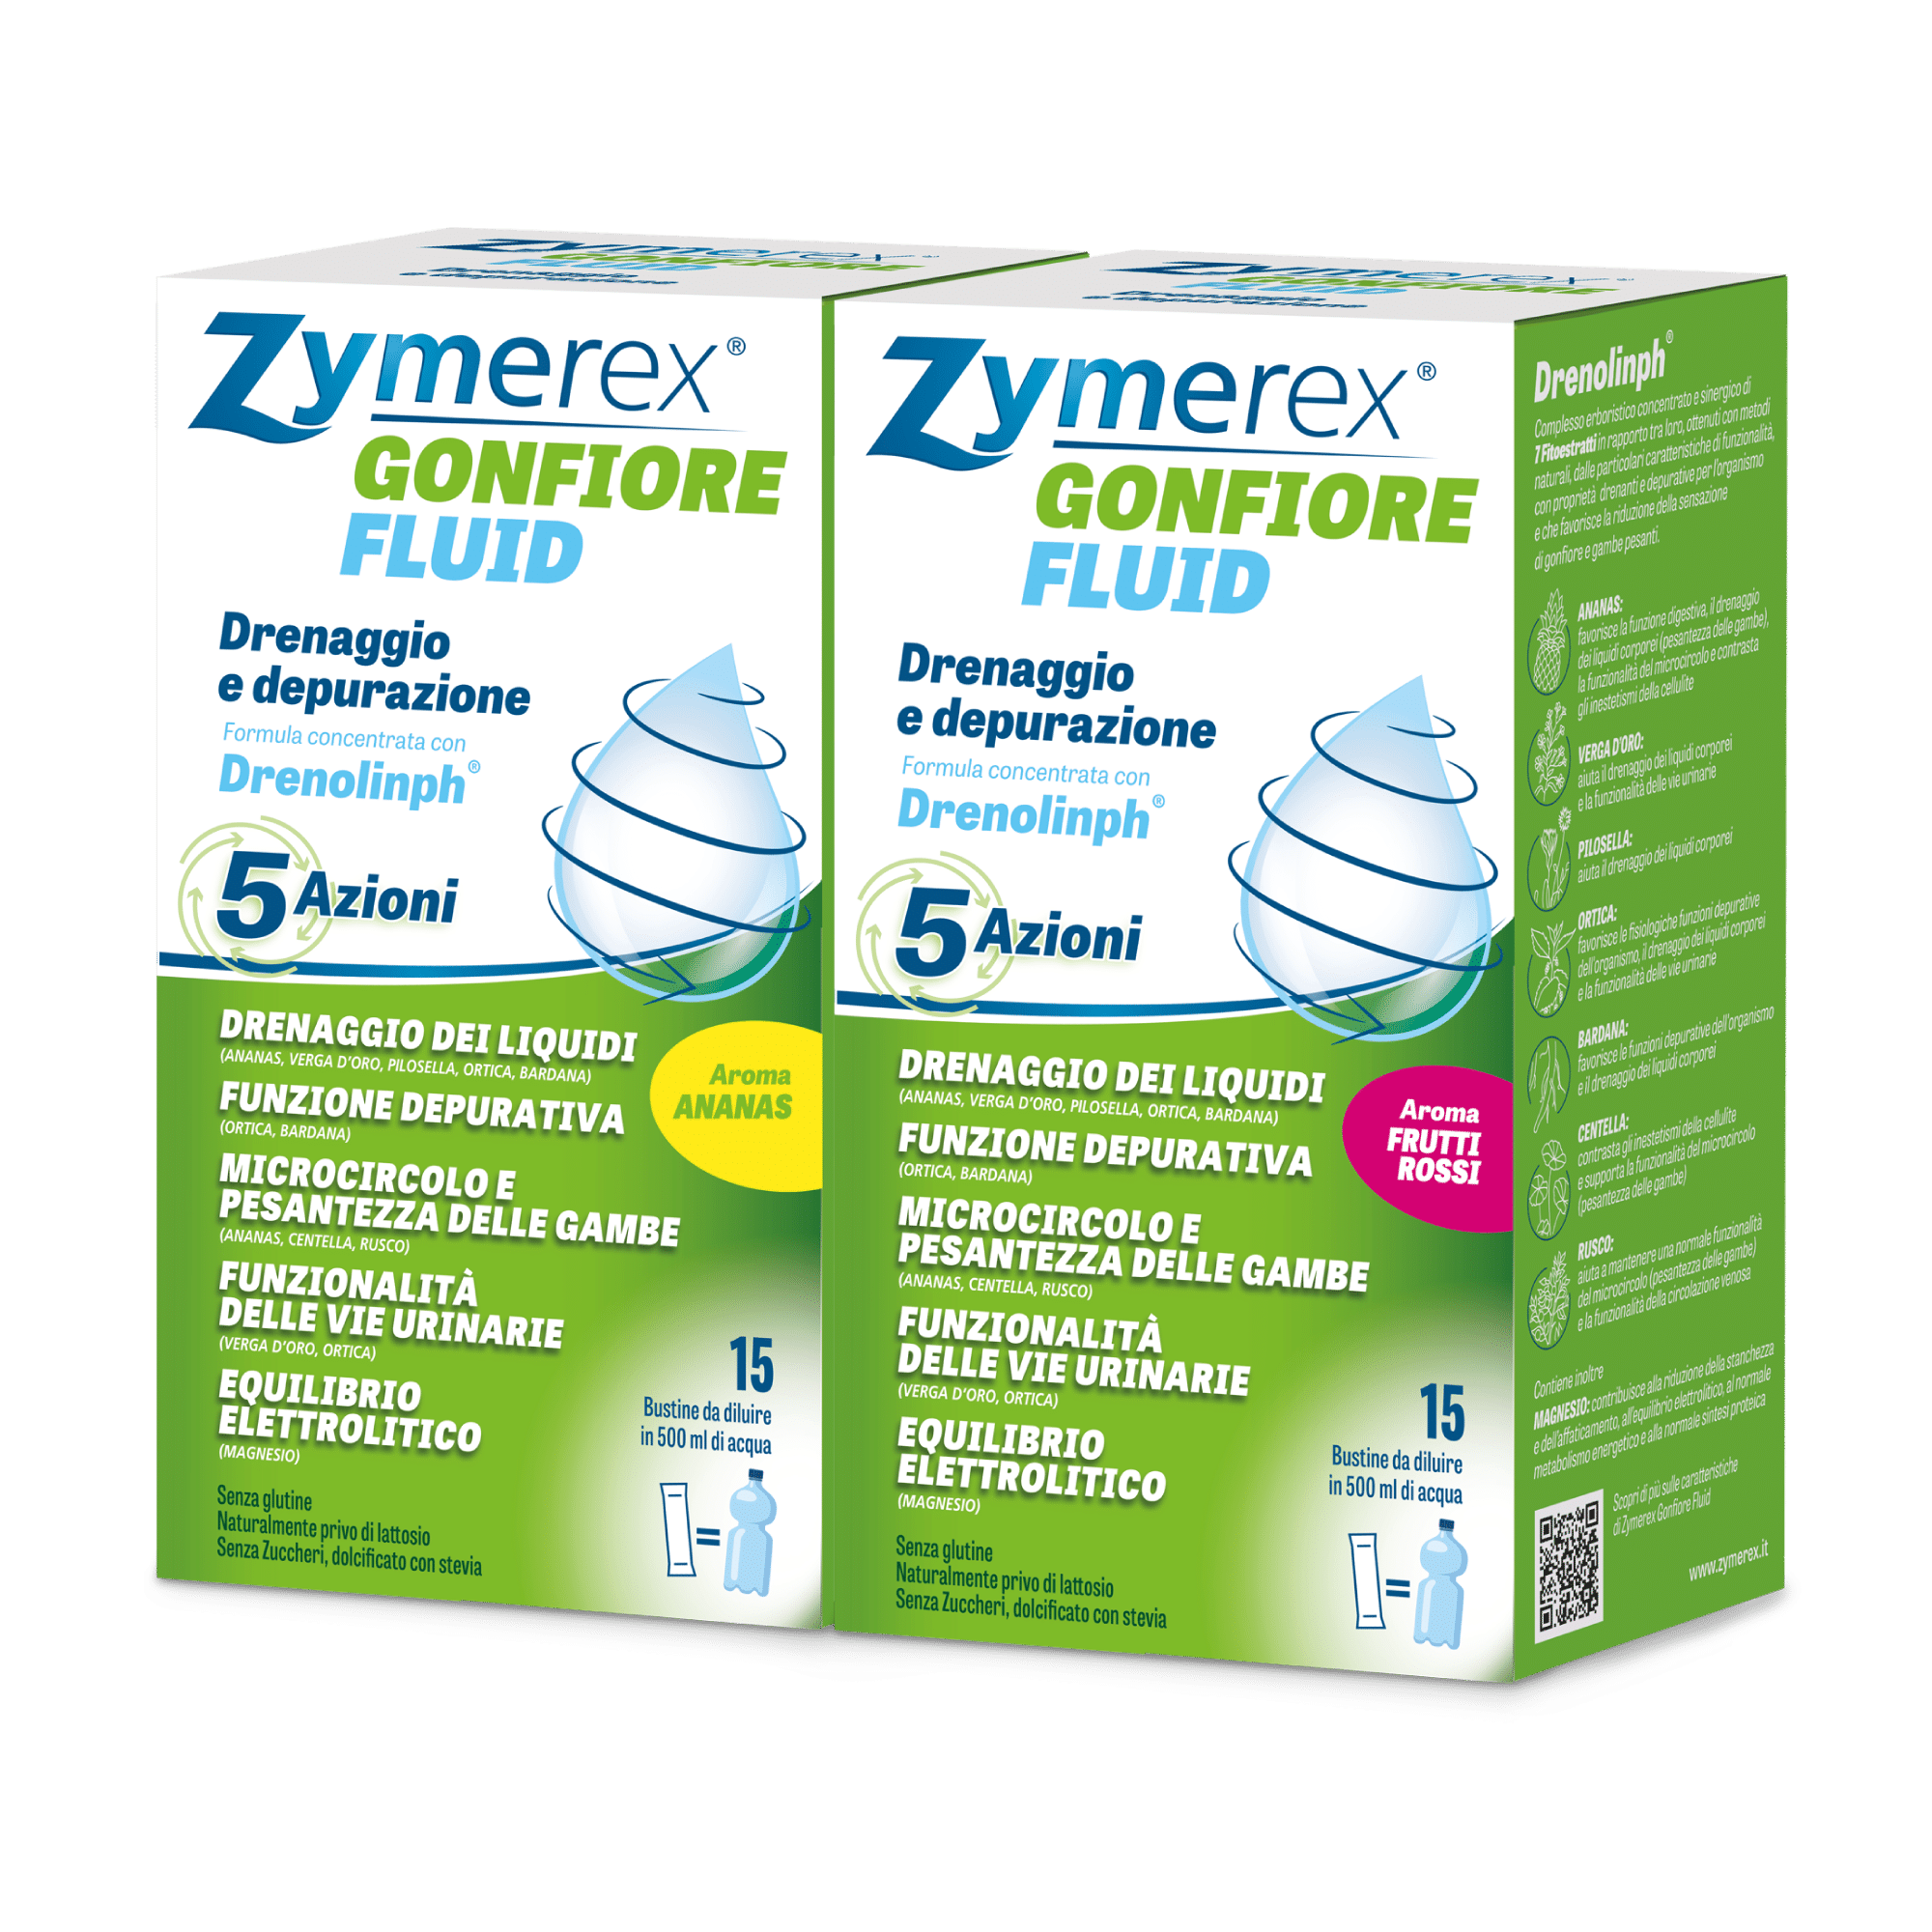 zymerex gonfiore fluid<br />
